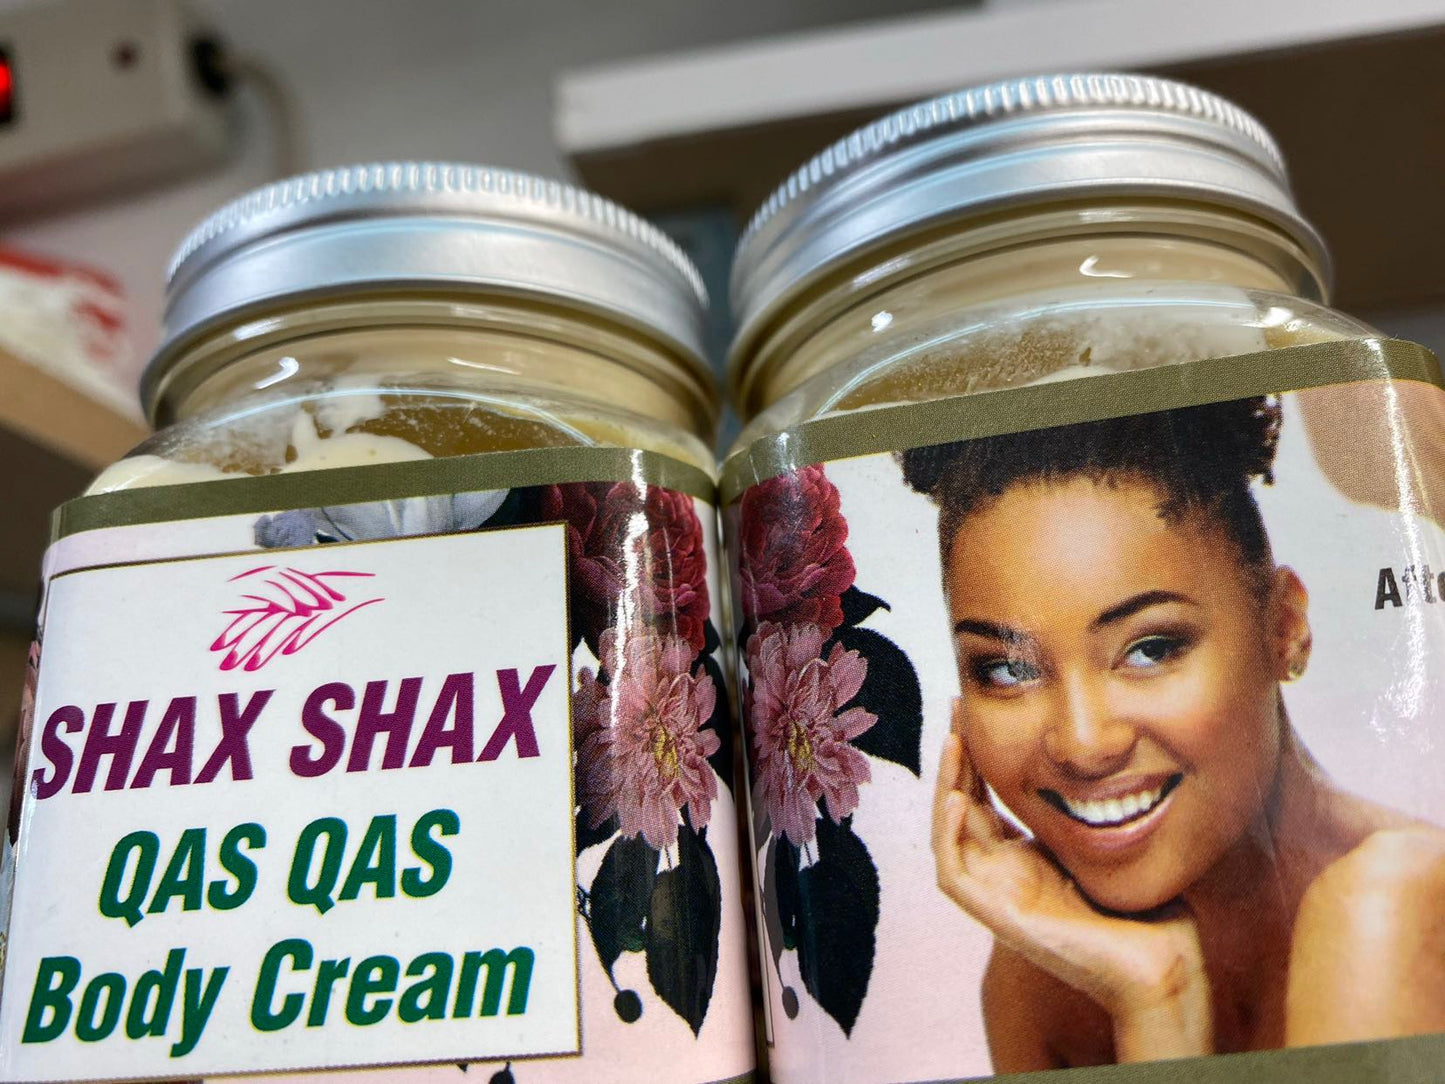 SHAX SHAX QAS QAS Body Cream